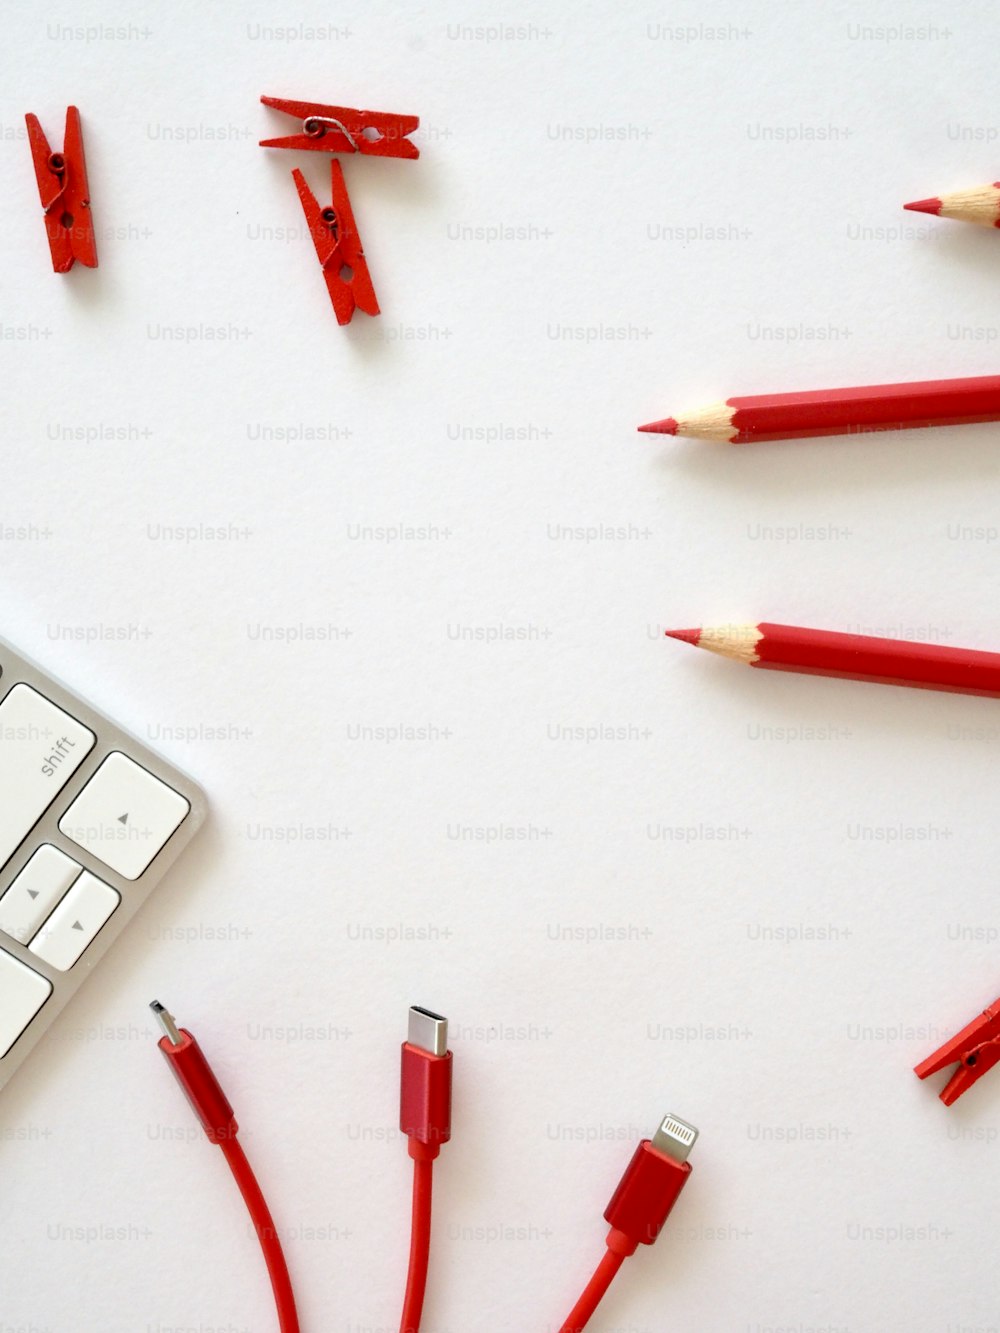 un teclado y unos lápices rojos sobre una superficie blanca